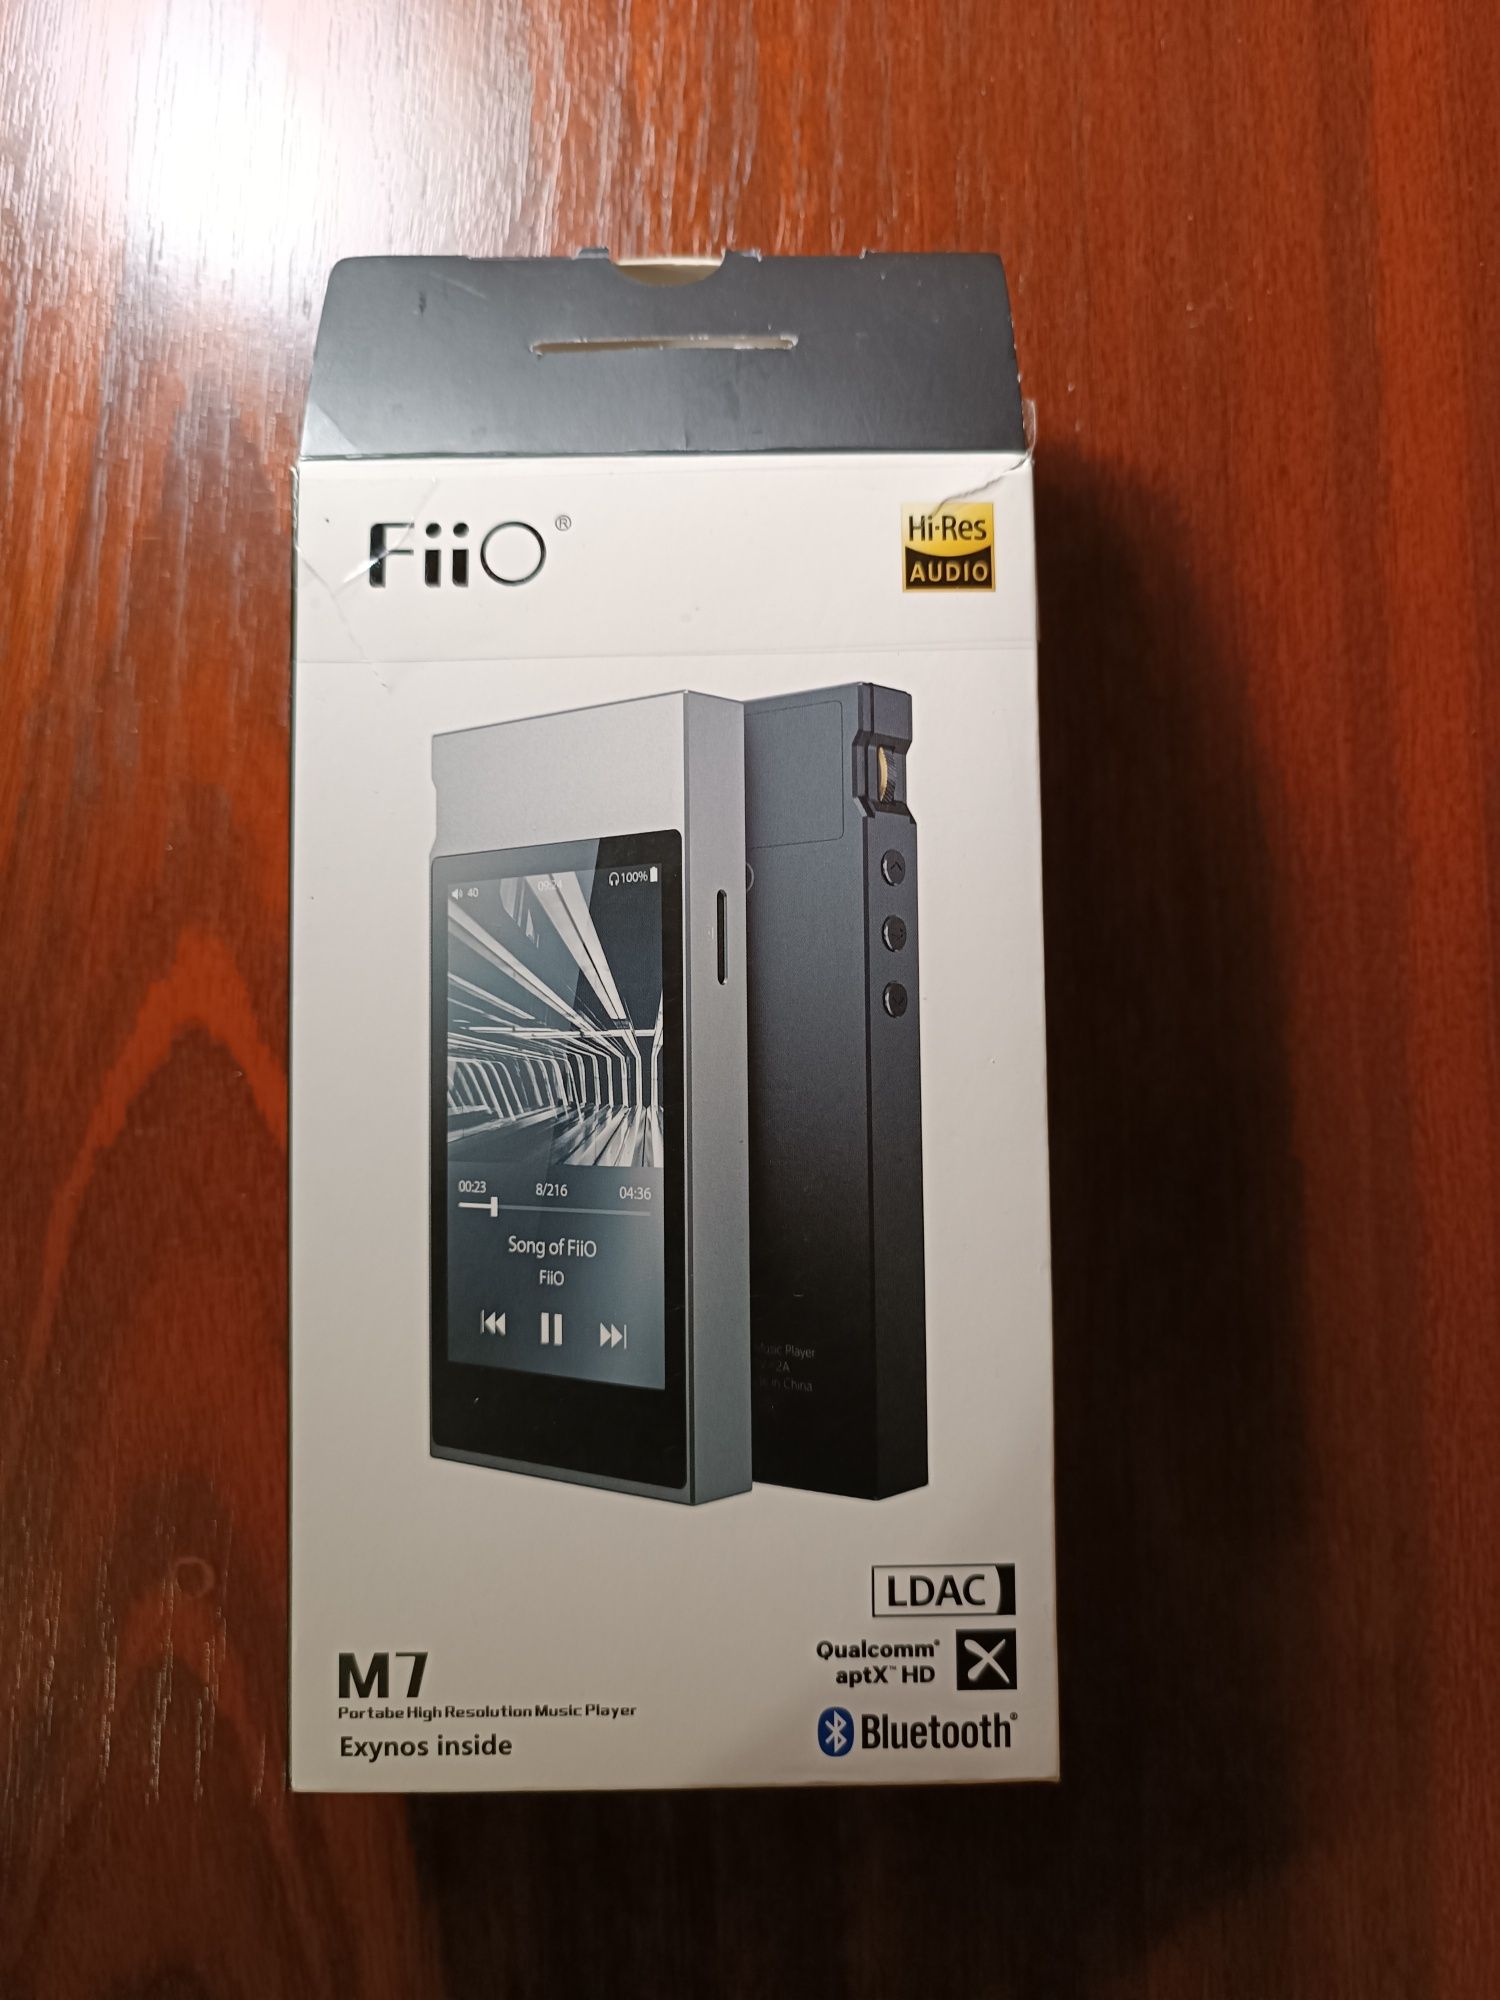 Продам шикарный HD плеер Fiio m7 очень популярный среди бюджетников.